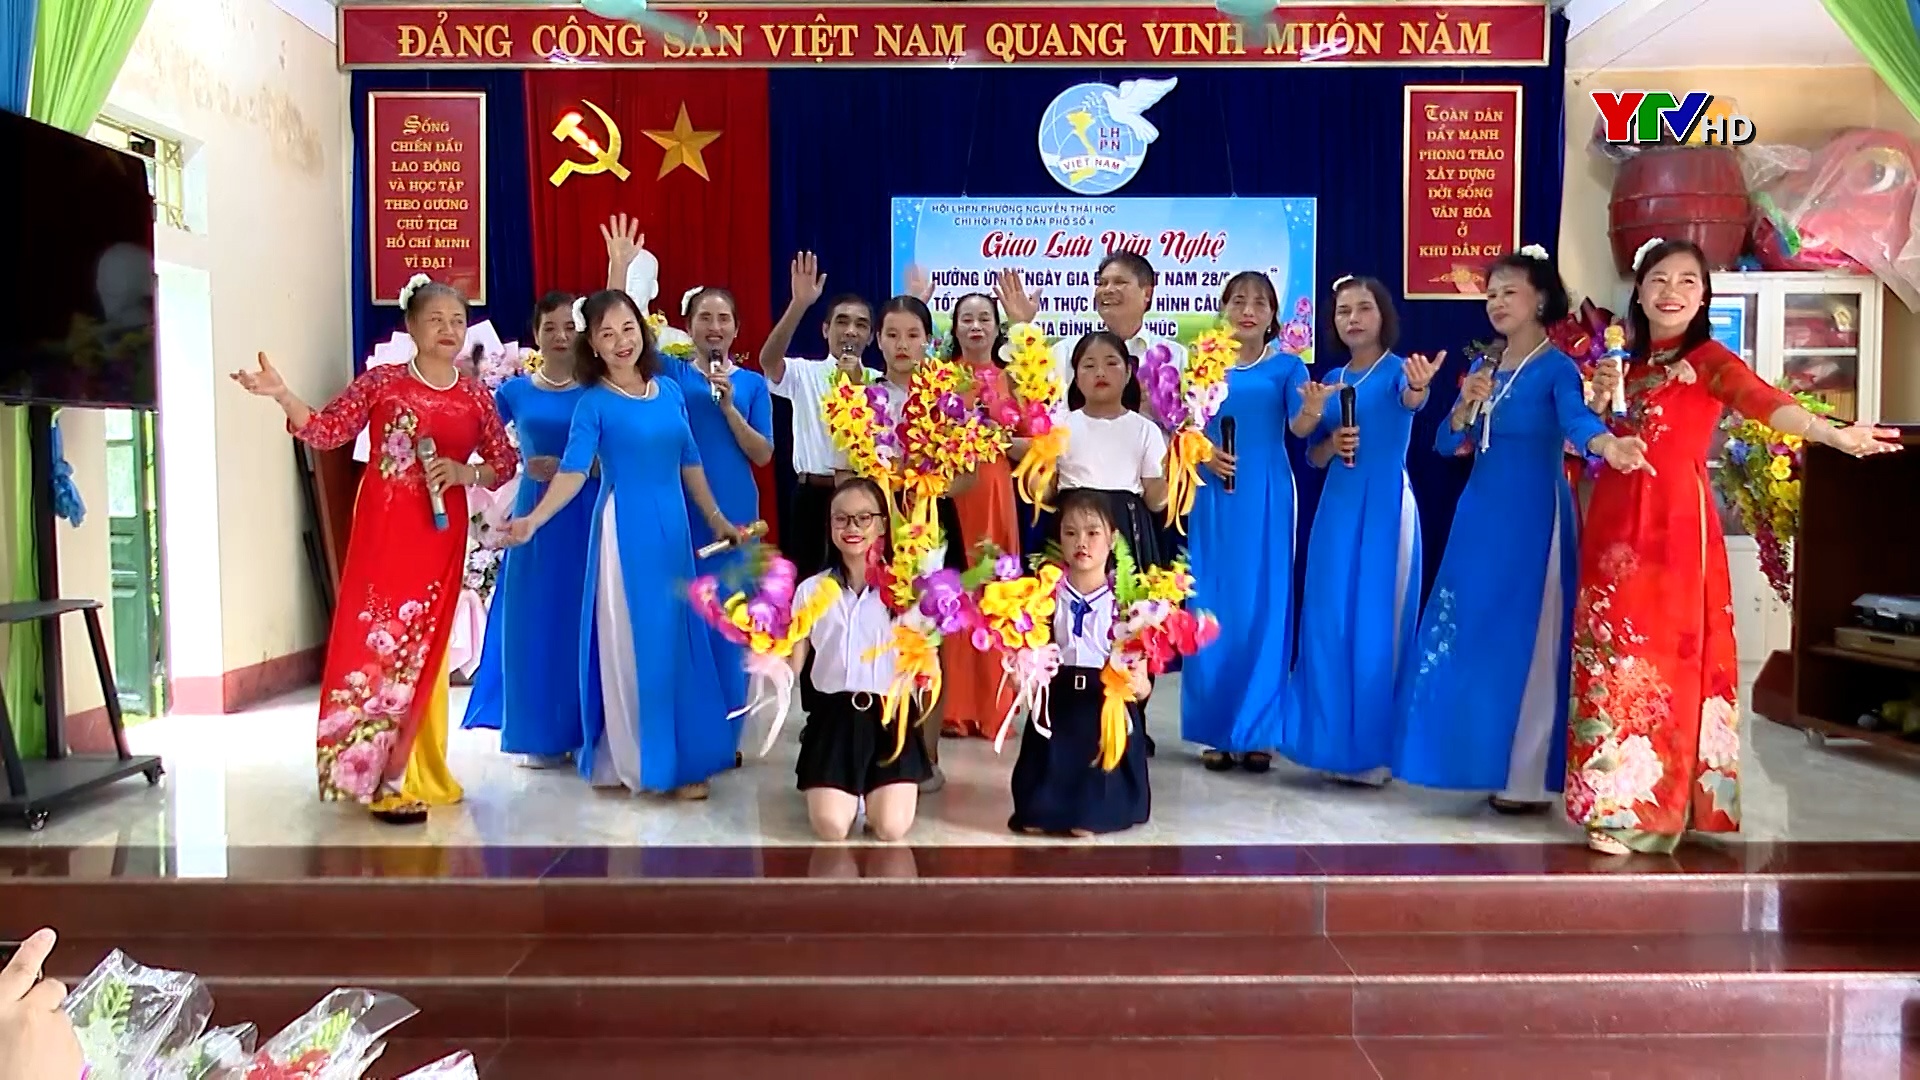 Thành phố Yên Bái: Nhiều hoạt động kỷ niệm 23 năm Ngày Gia đình Việt Nam